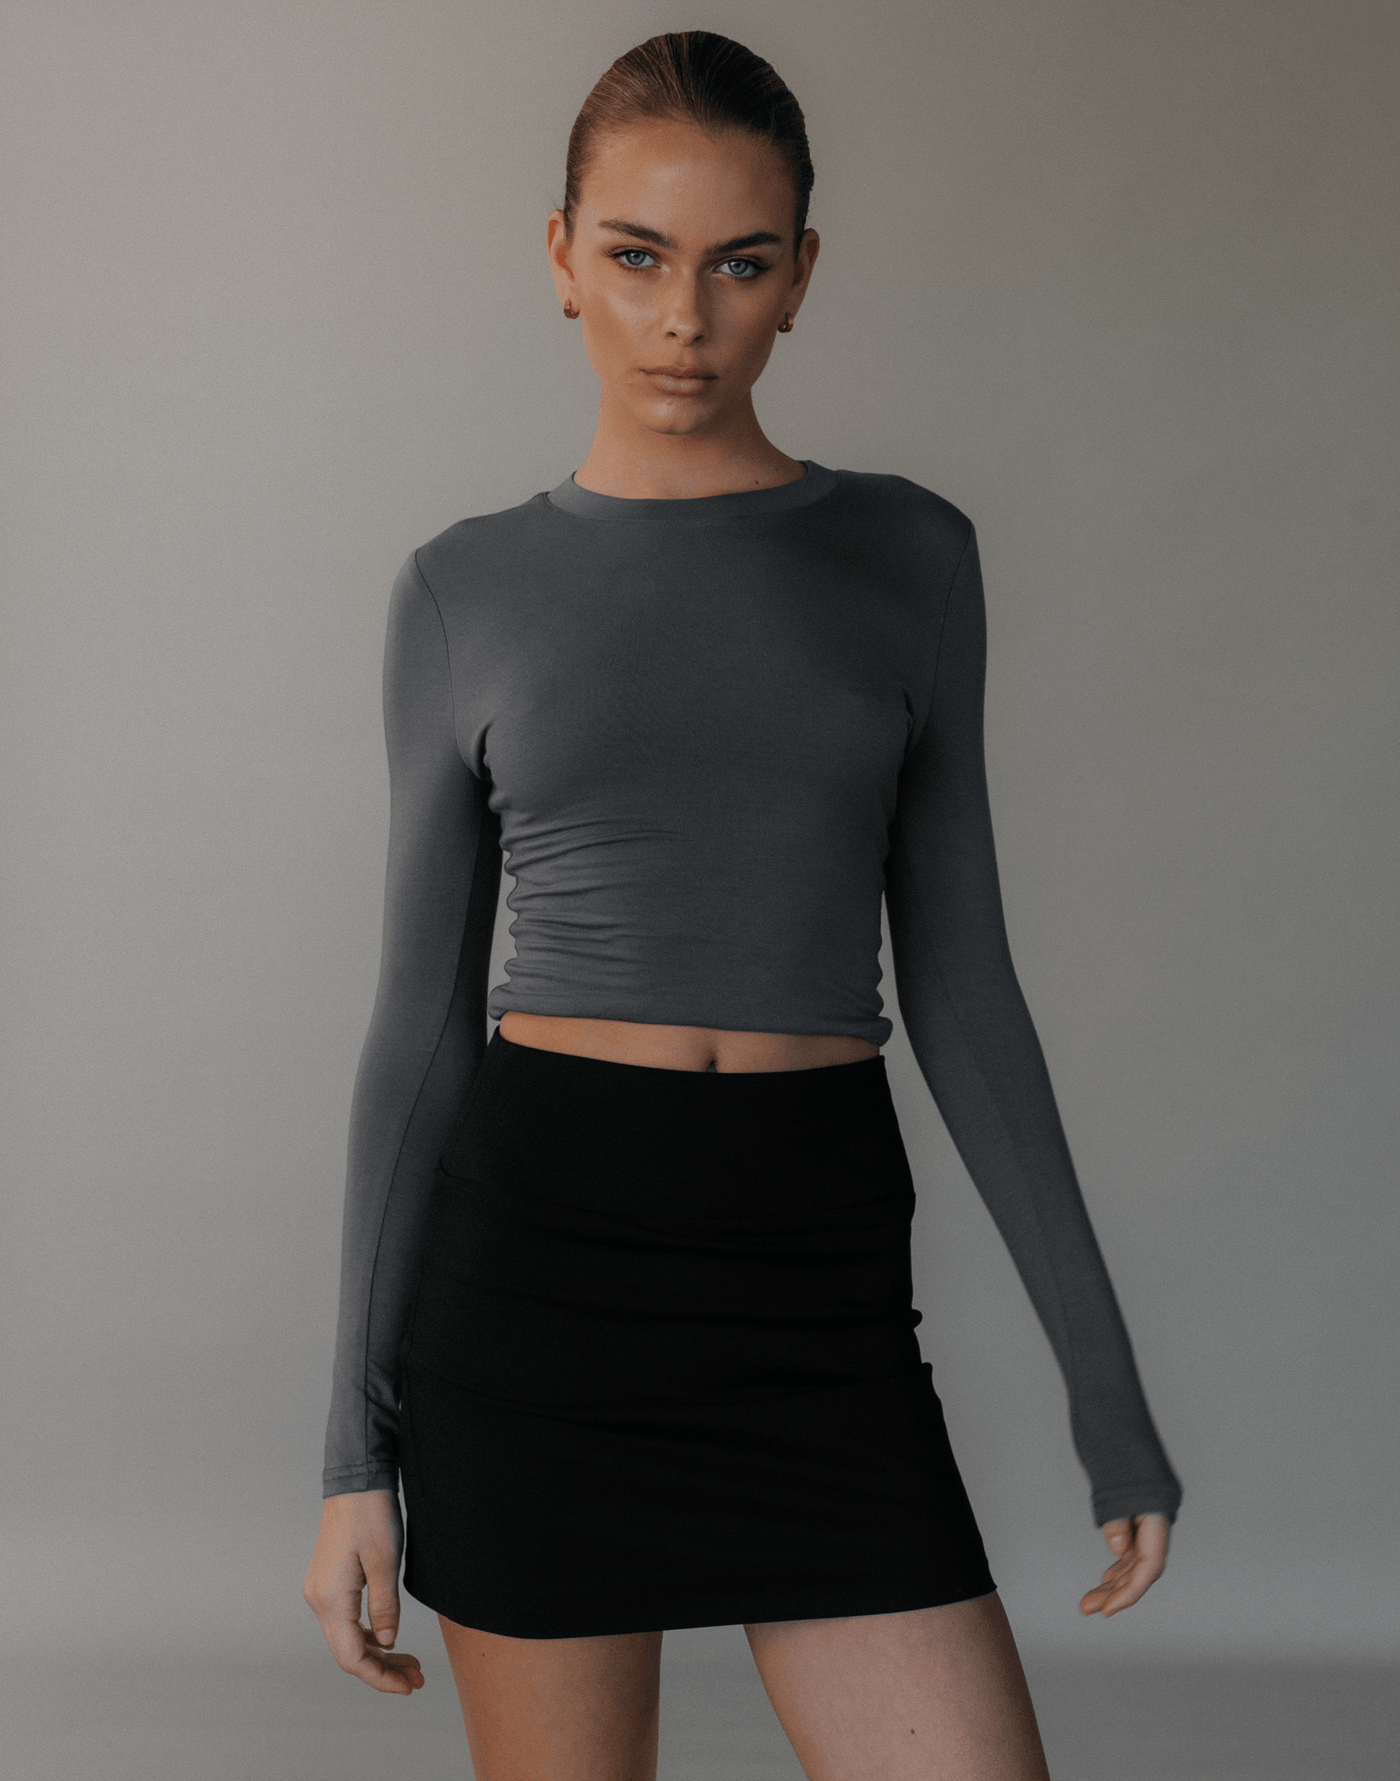 Alissa Mini Skirt (Black) - Fitted Mid Rise Mini Skirt - Women's Skirt - Charcoal Clothing